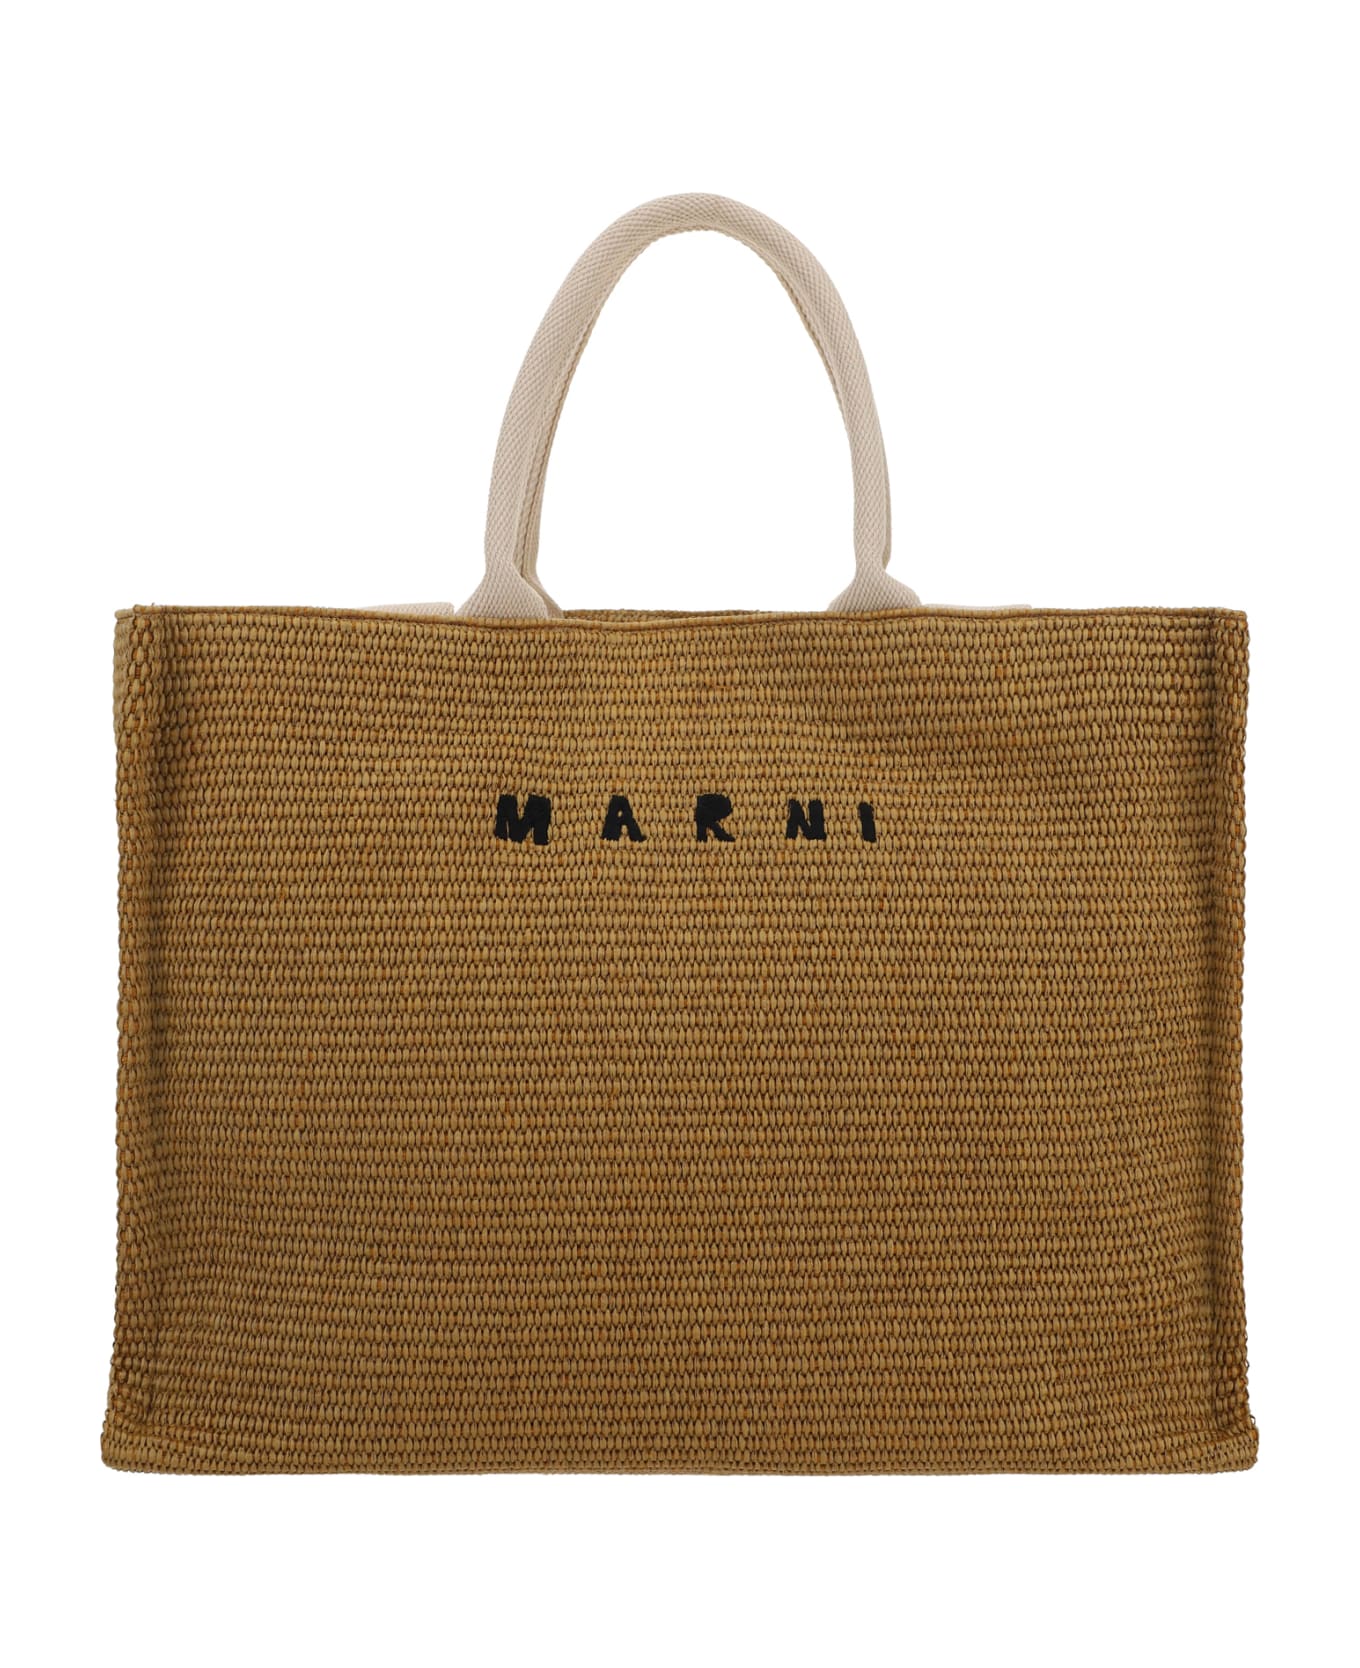 Marni Tote Handbag - Brown トートバッグ